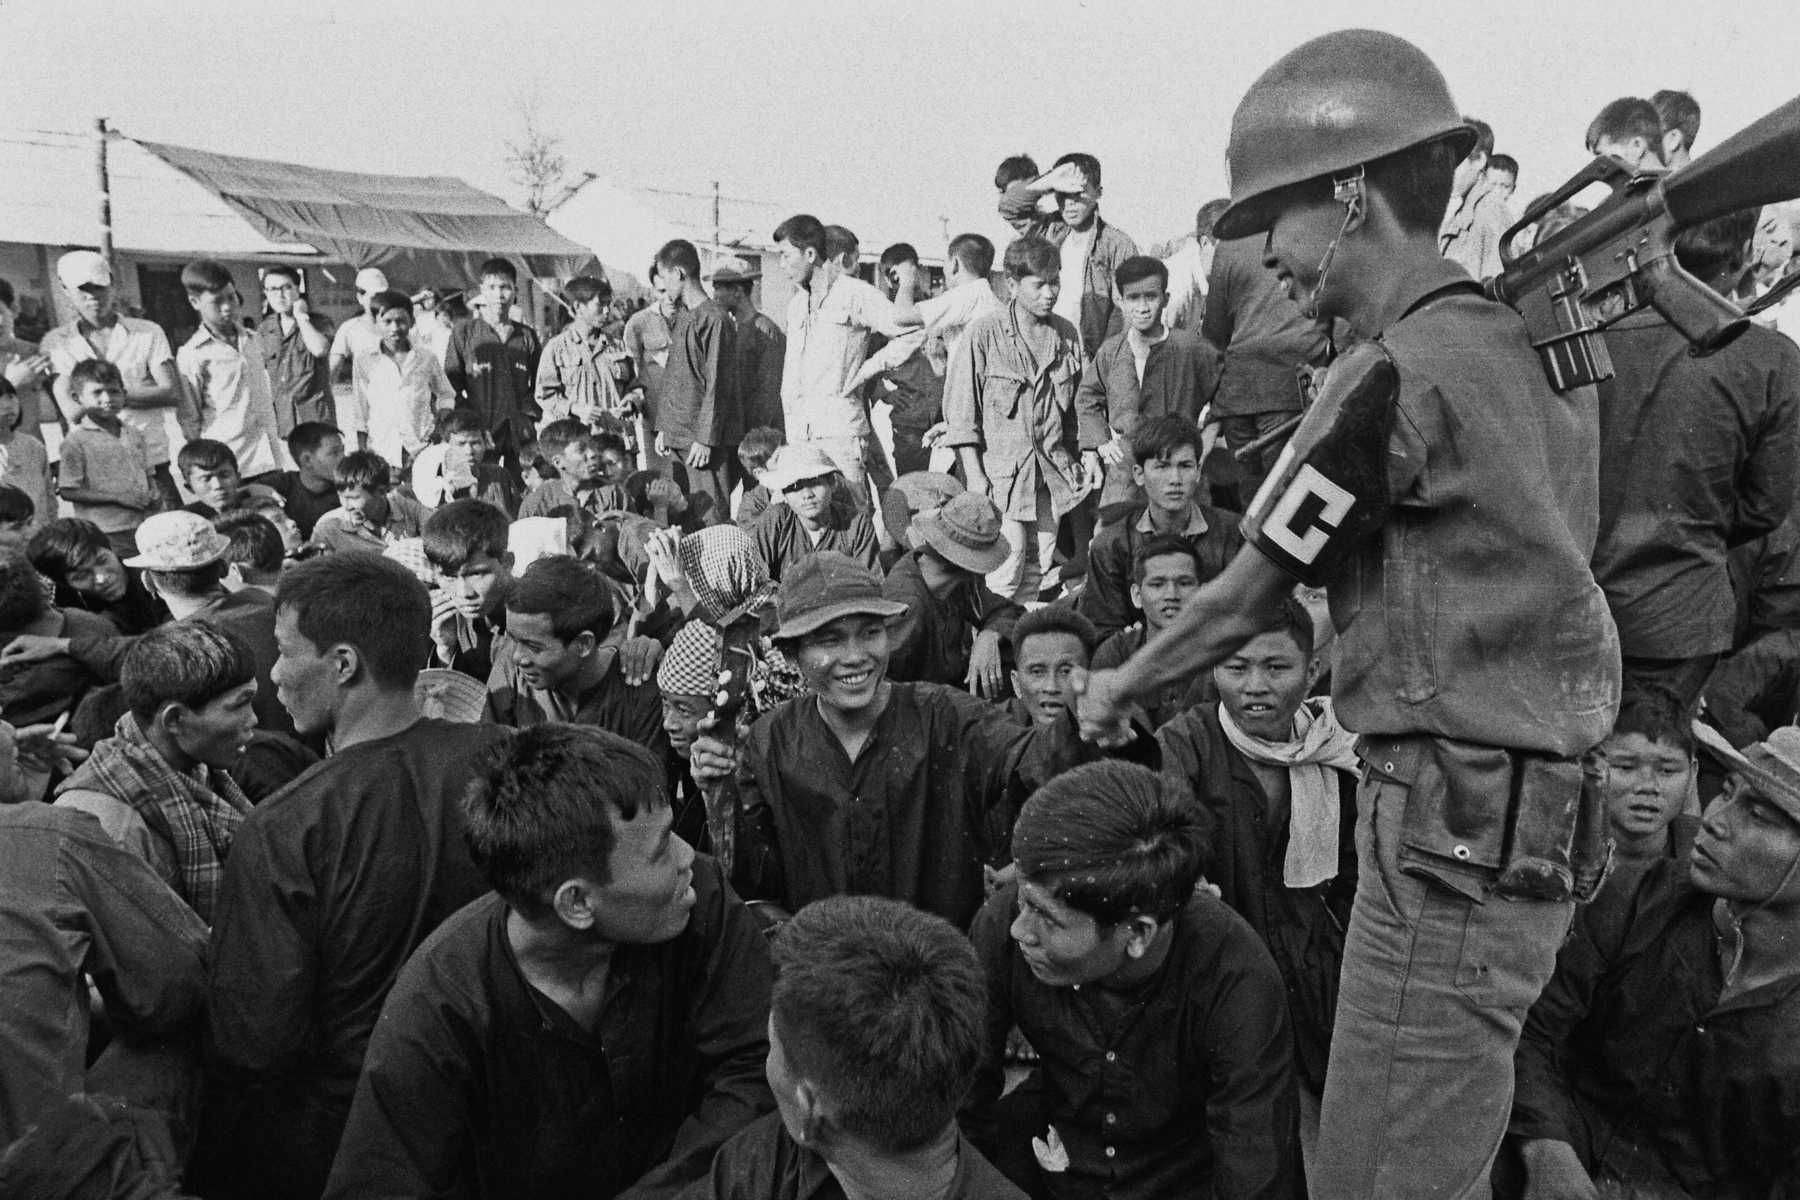 Fotografia em preto e branco. Diversos pessoas reunidas, próximas umas às outras. Na lateral direita da imagem, um soldado fardado aperta a mão de um homem.